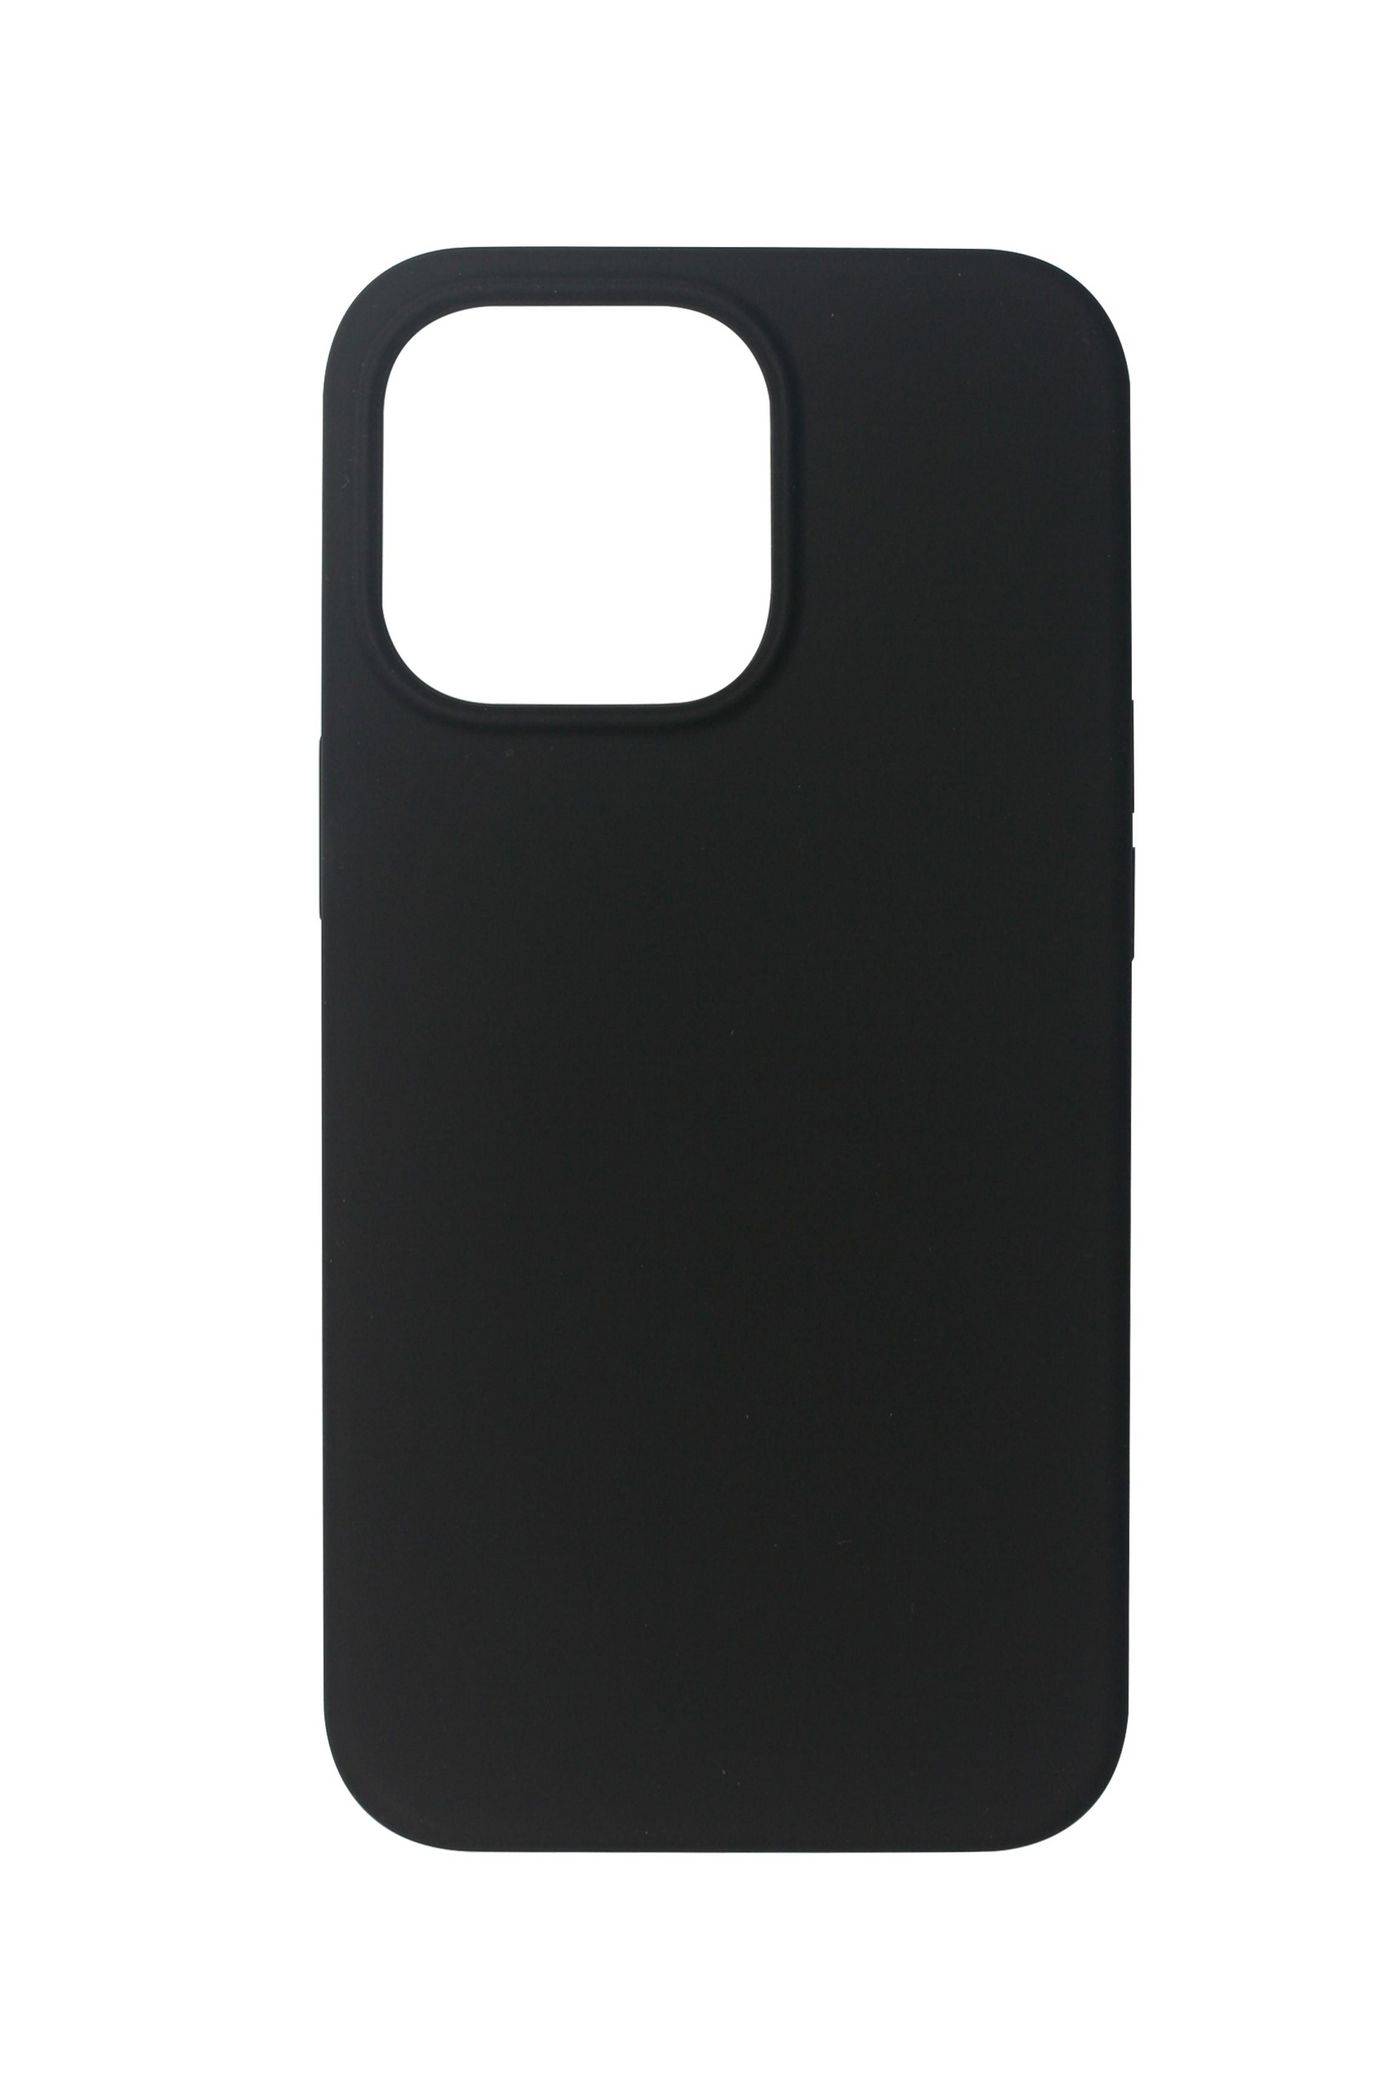 ESTUFF - Hintere Abdeckung für Mobiltelefon - Silikon - Schwarz - für Apple iPhone 13 Pro Max (ES671